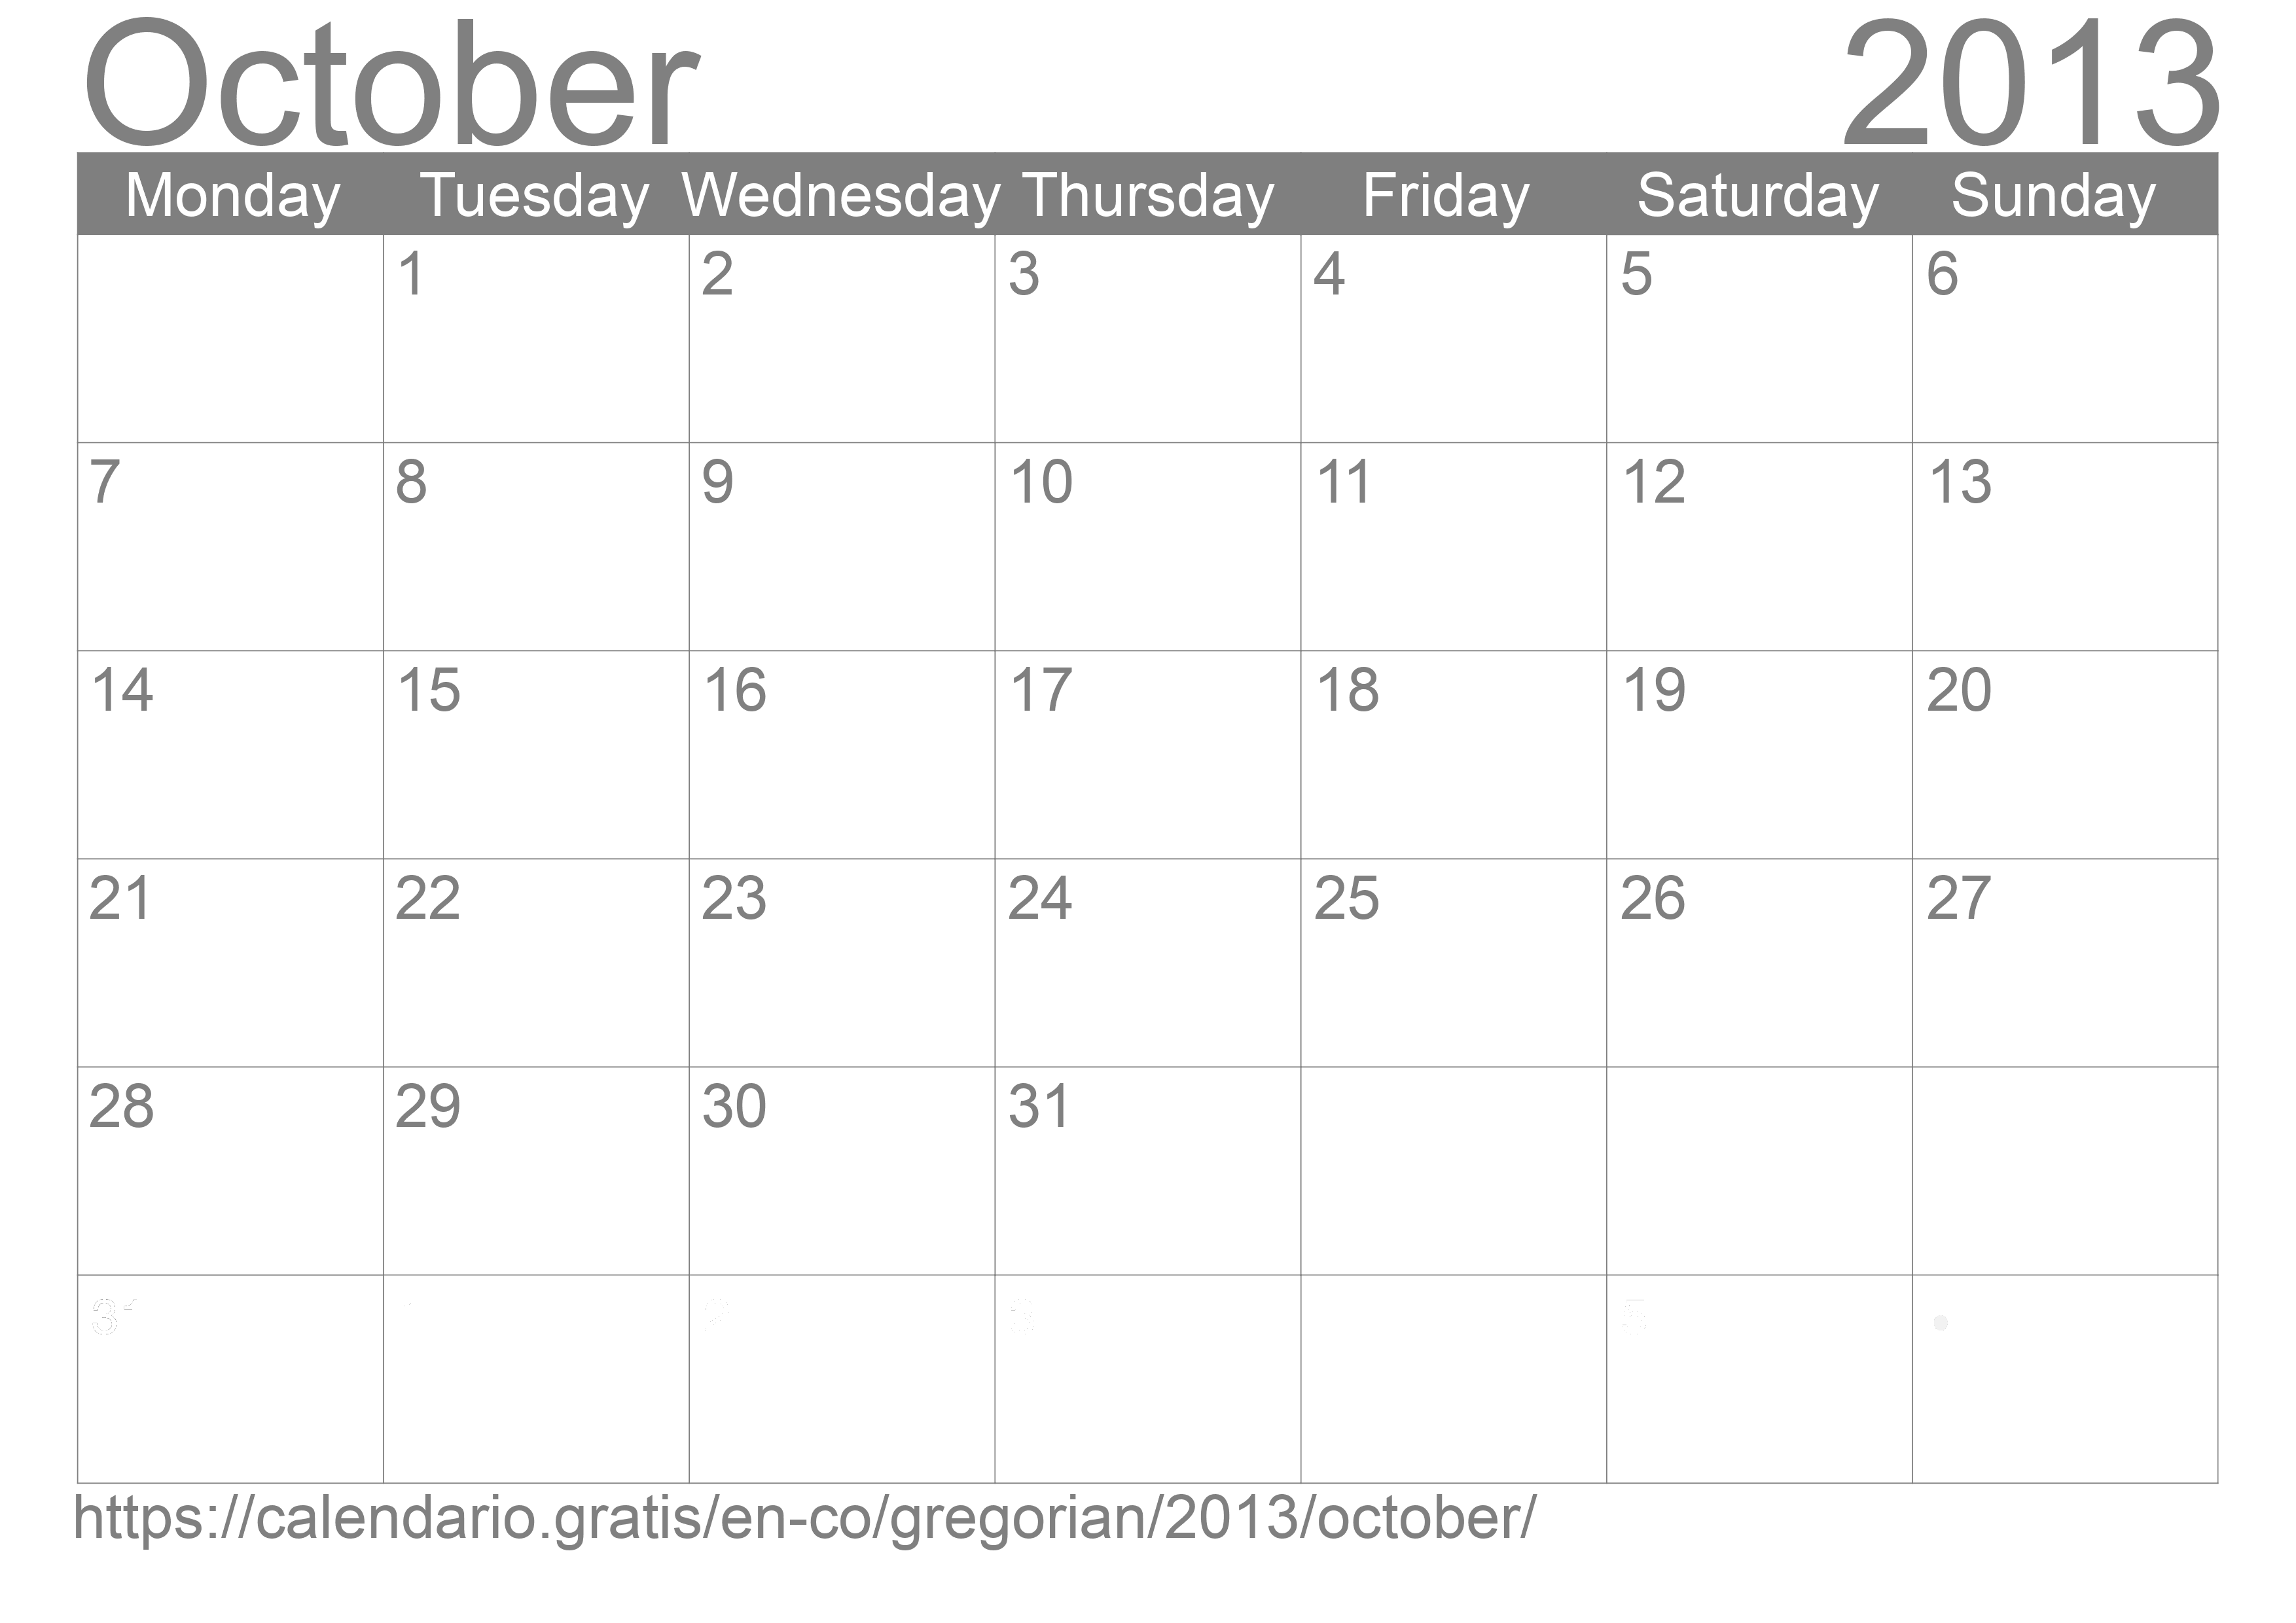 Calendar October 2013 to print